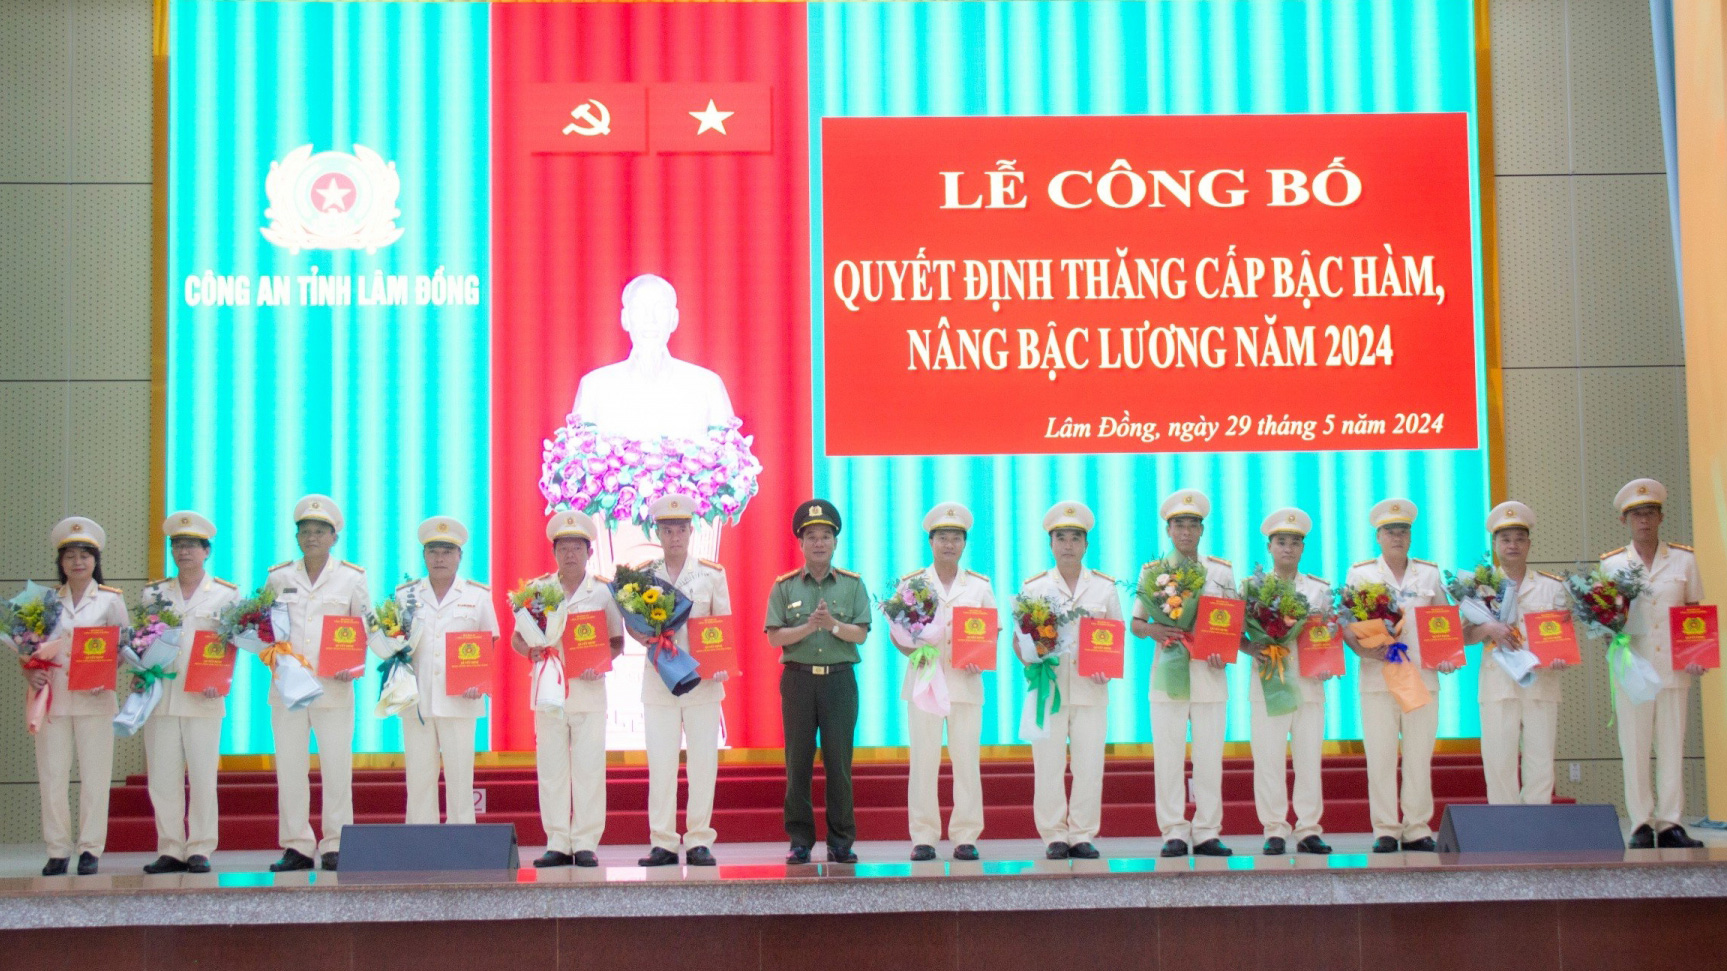 Đại tá Lê Hồng Phong - Phó Giám đốc Công an tỉnh trao Quyết định nâng lương, thăng cấp bậc hàm của Bộ trưởng Bộ Công an cho các lãnh đạo Công an đơn vị, địa phương